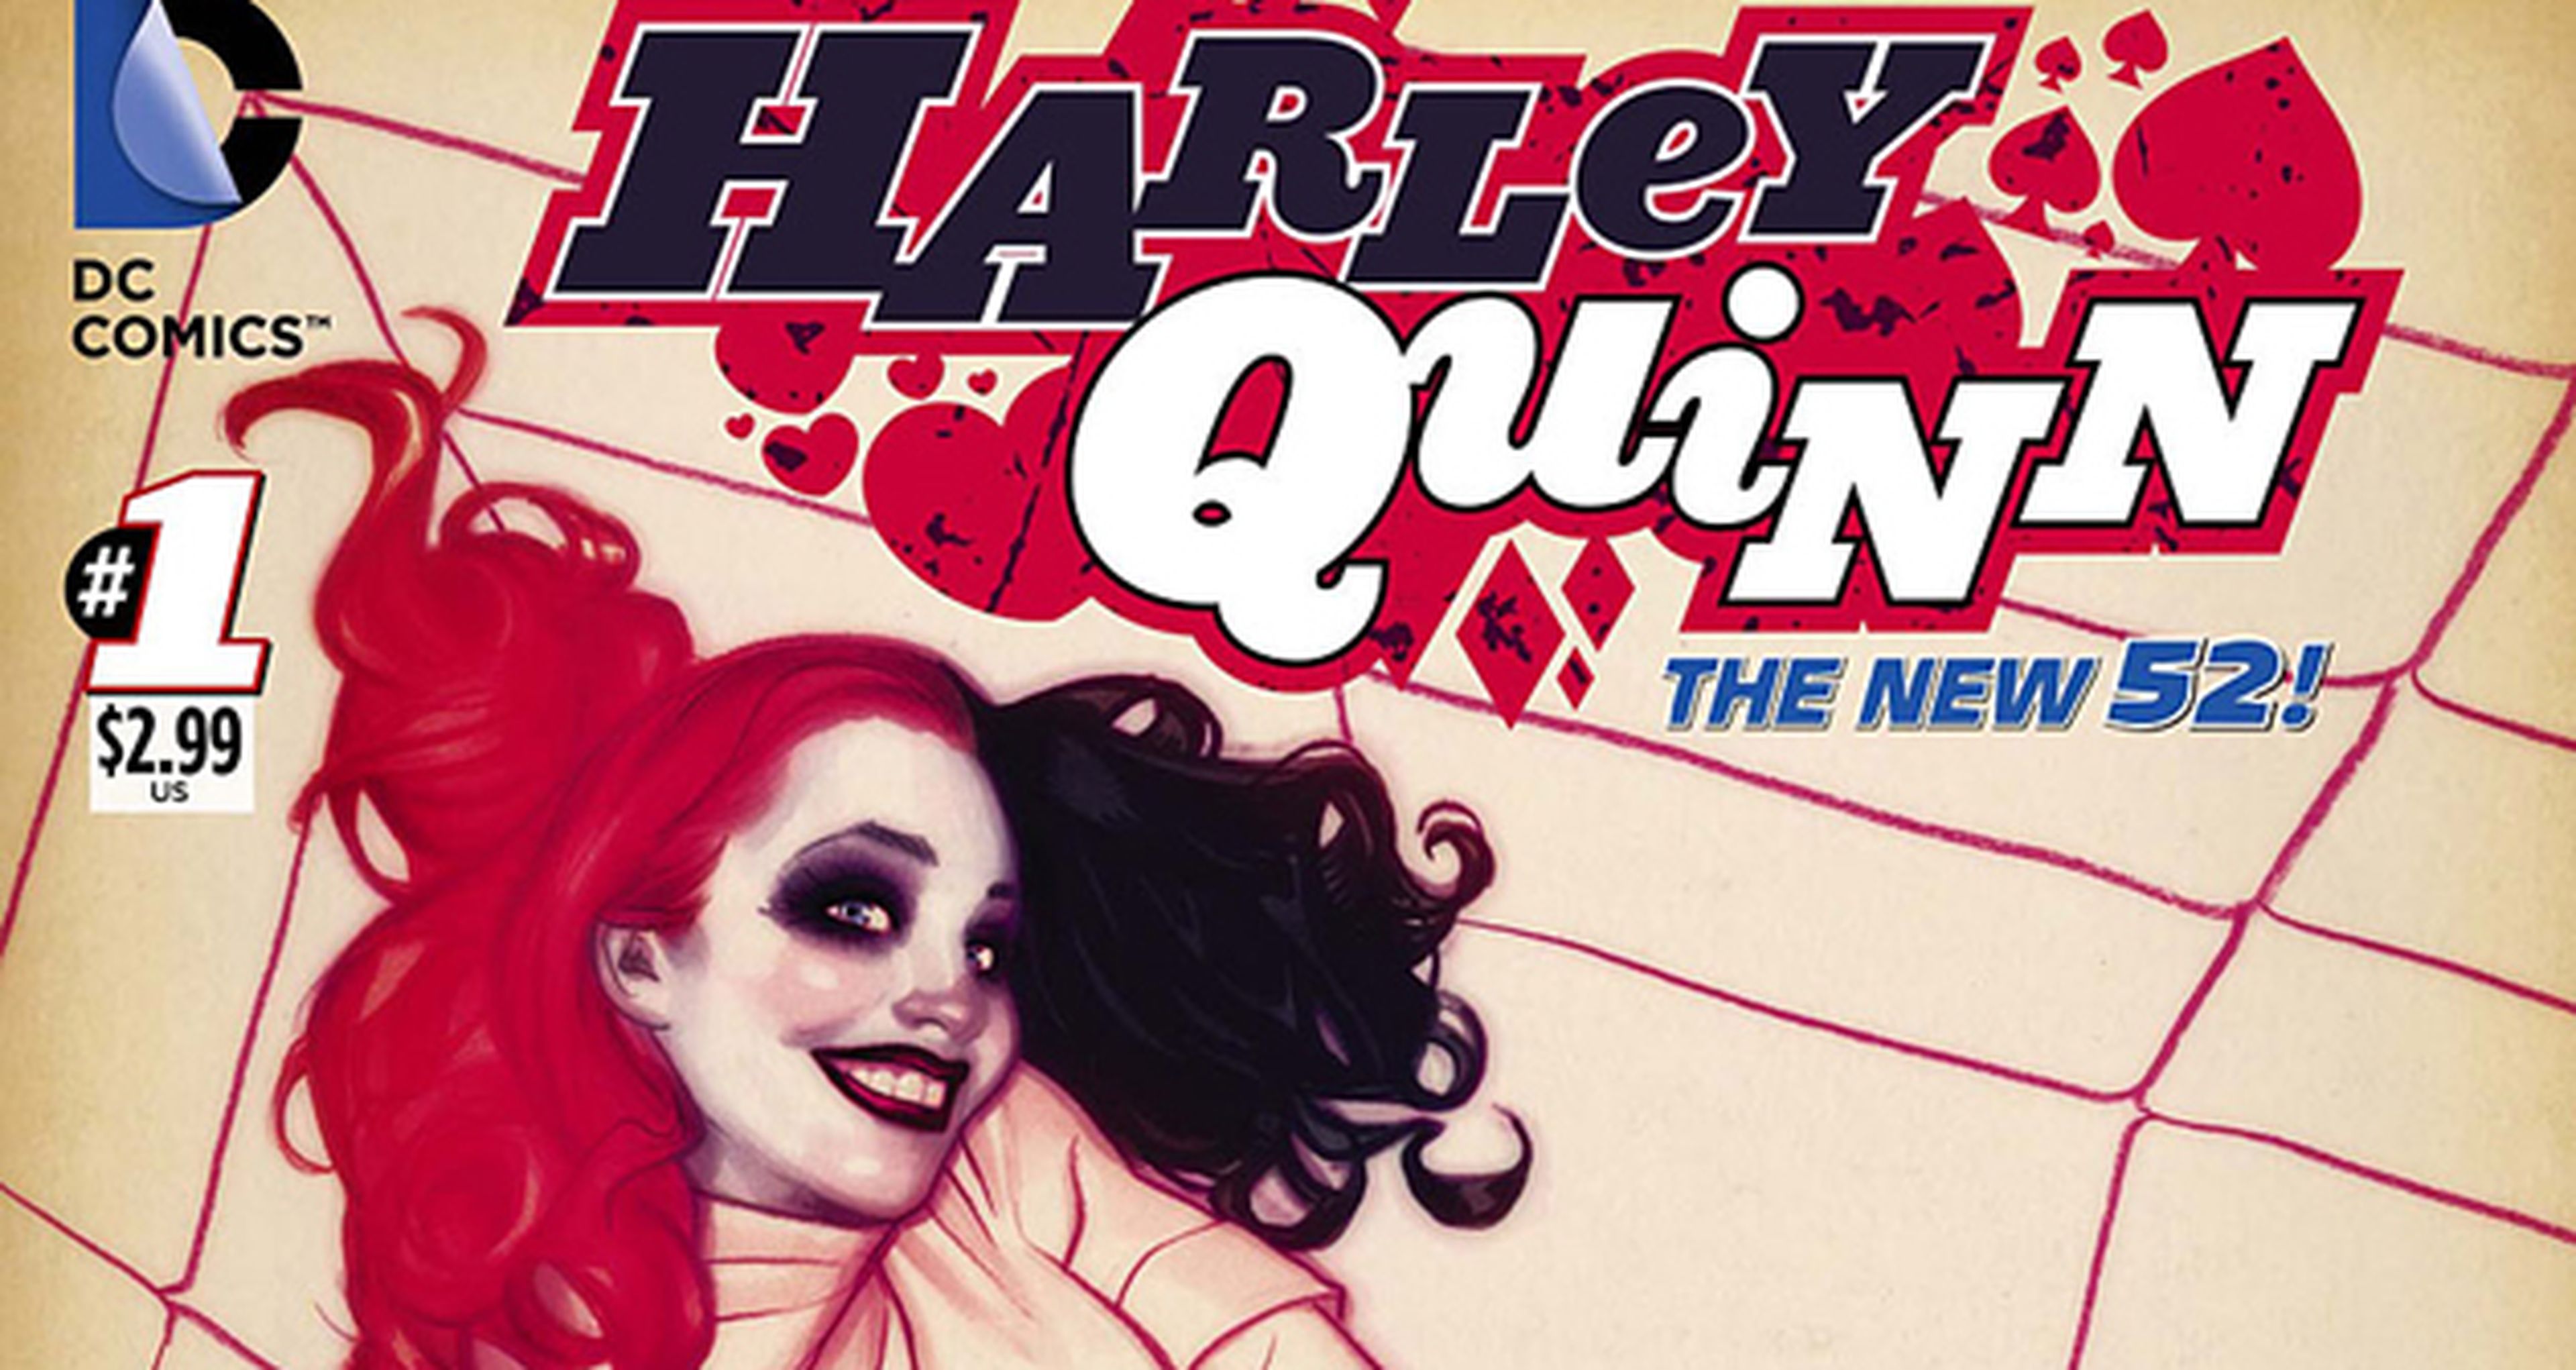 Avance EEUU: Harley Quinn nº 1